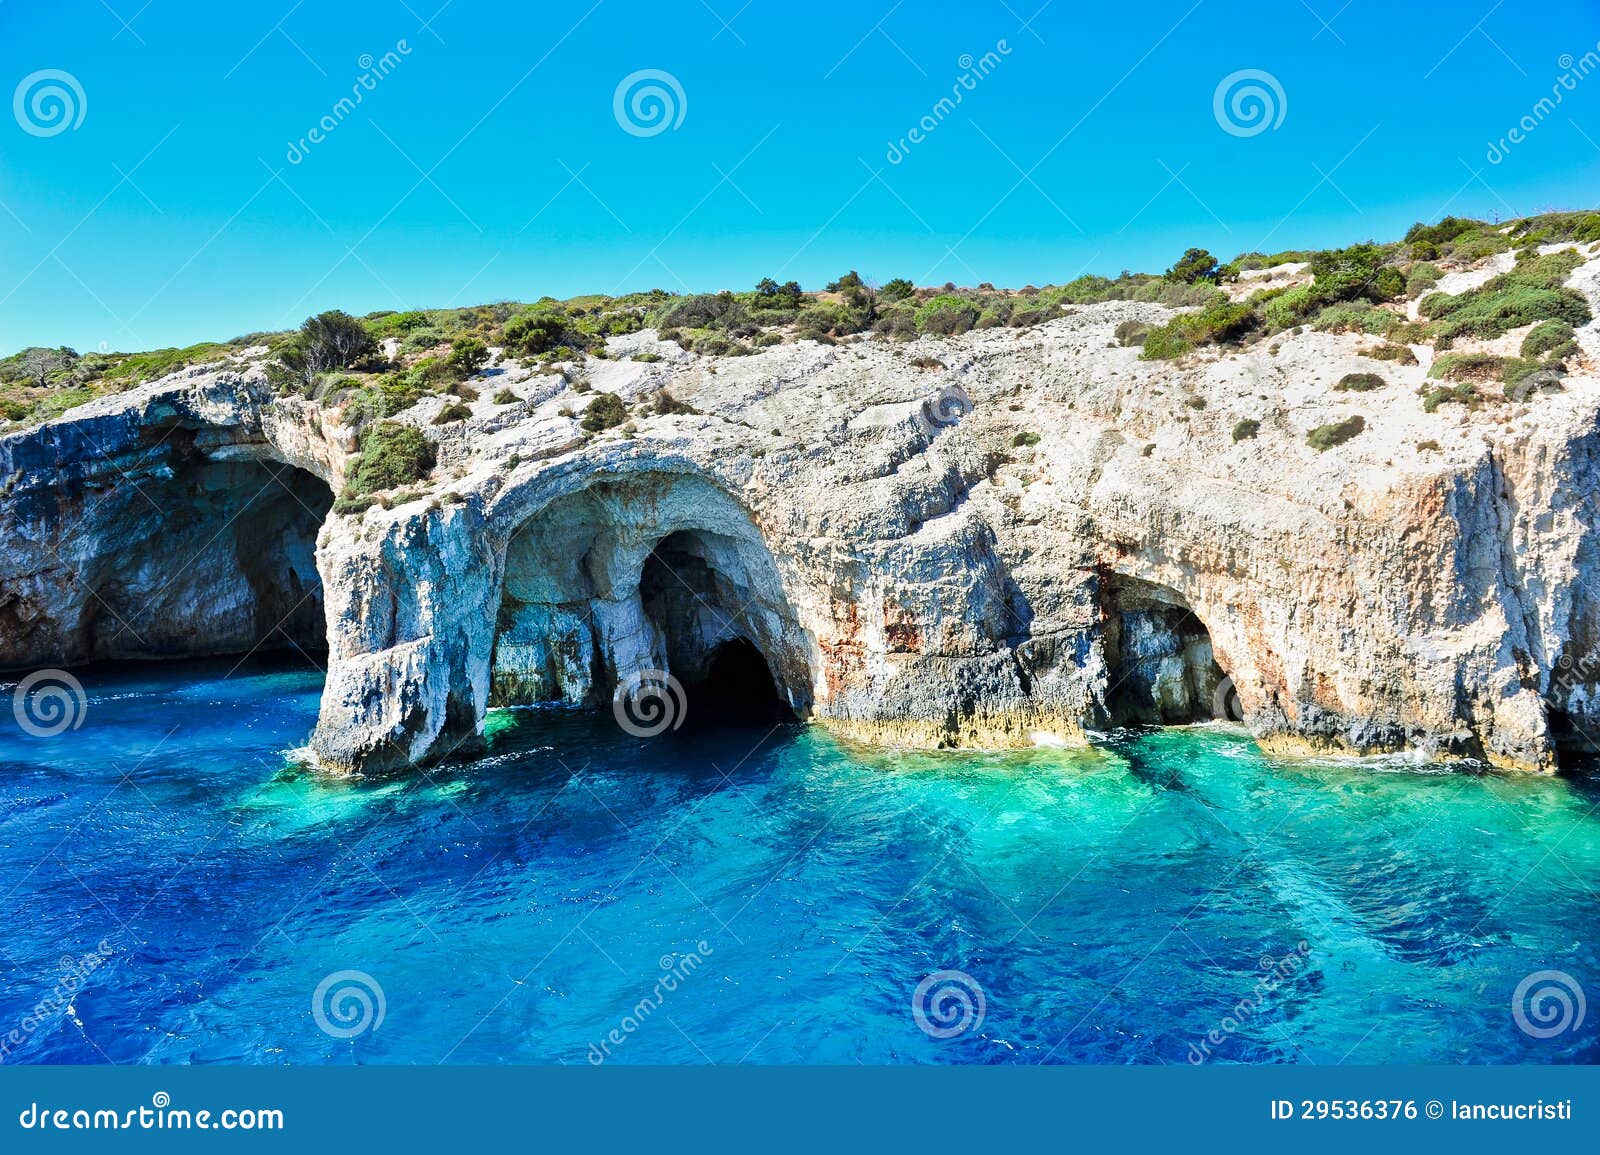 Blue Caves on Zakynthos Island, Greece Stock Photo - Image of hole